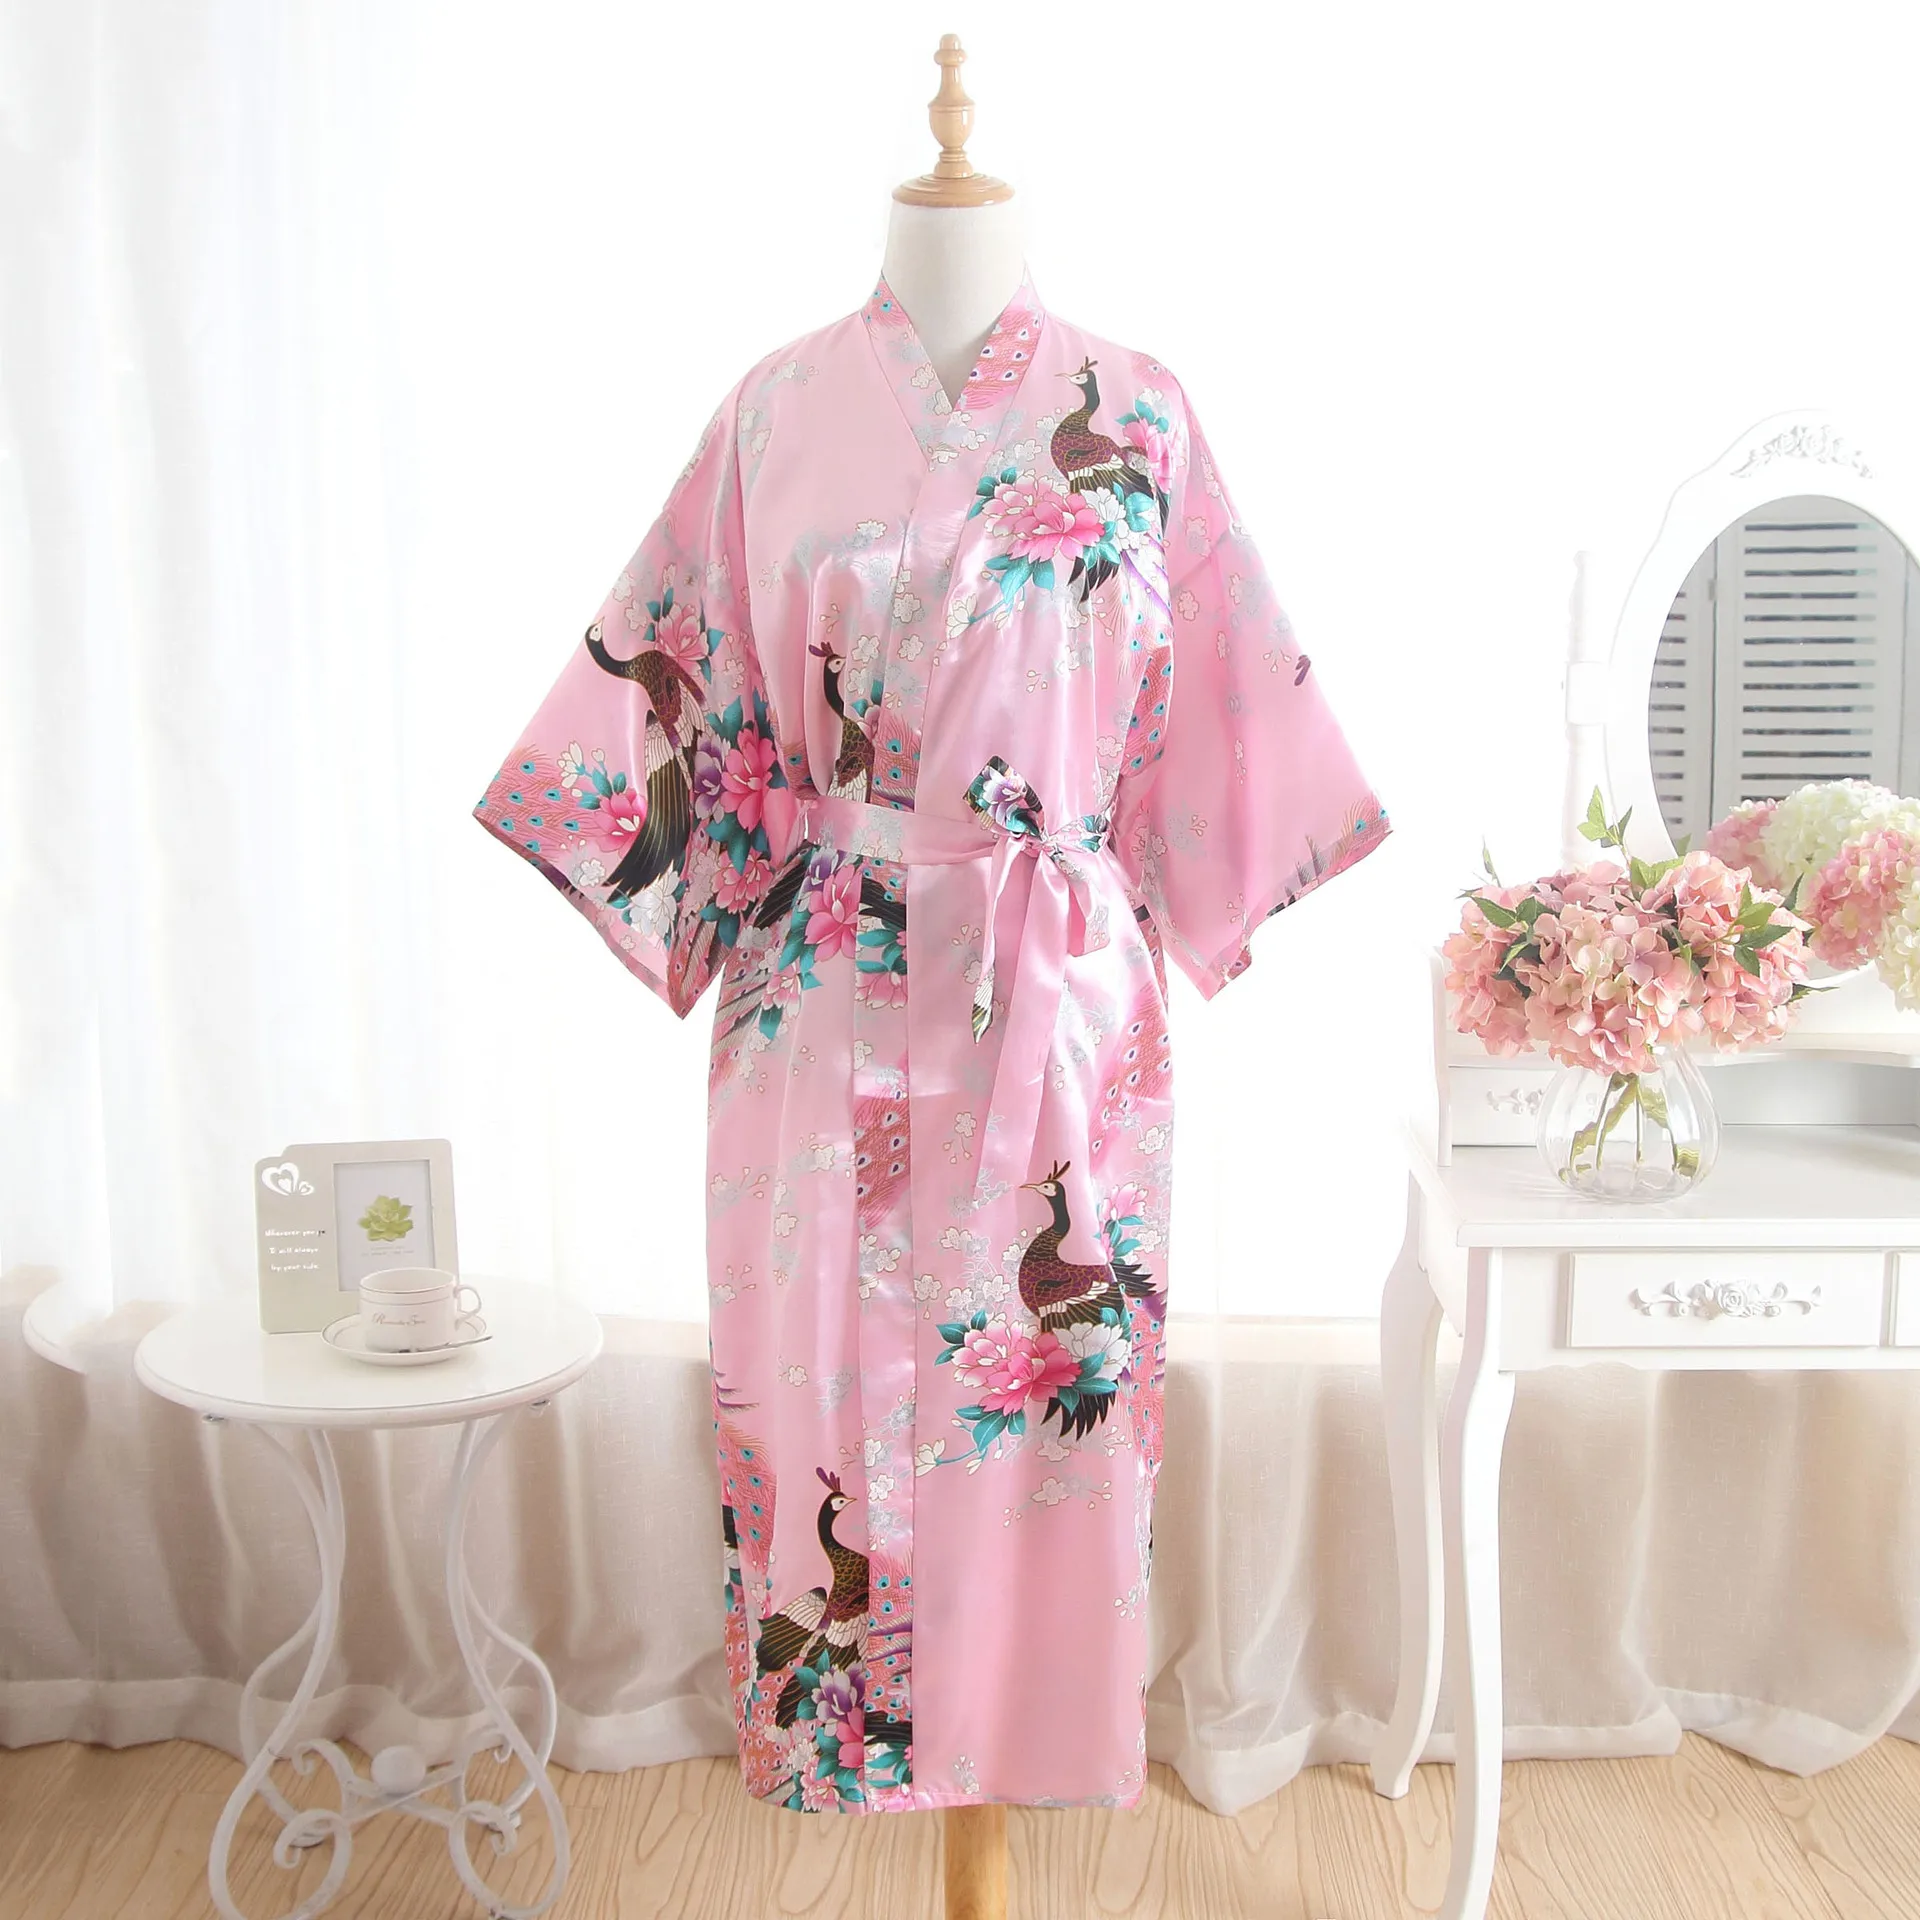 BZEL халаты невесты атласная Шелковая пижама халат для женщин свадебный халат цветочный халат Женское кимоно Женский банный Халат